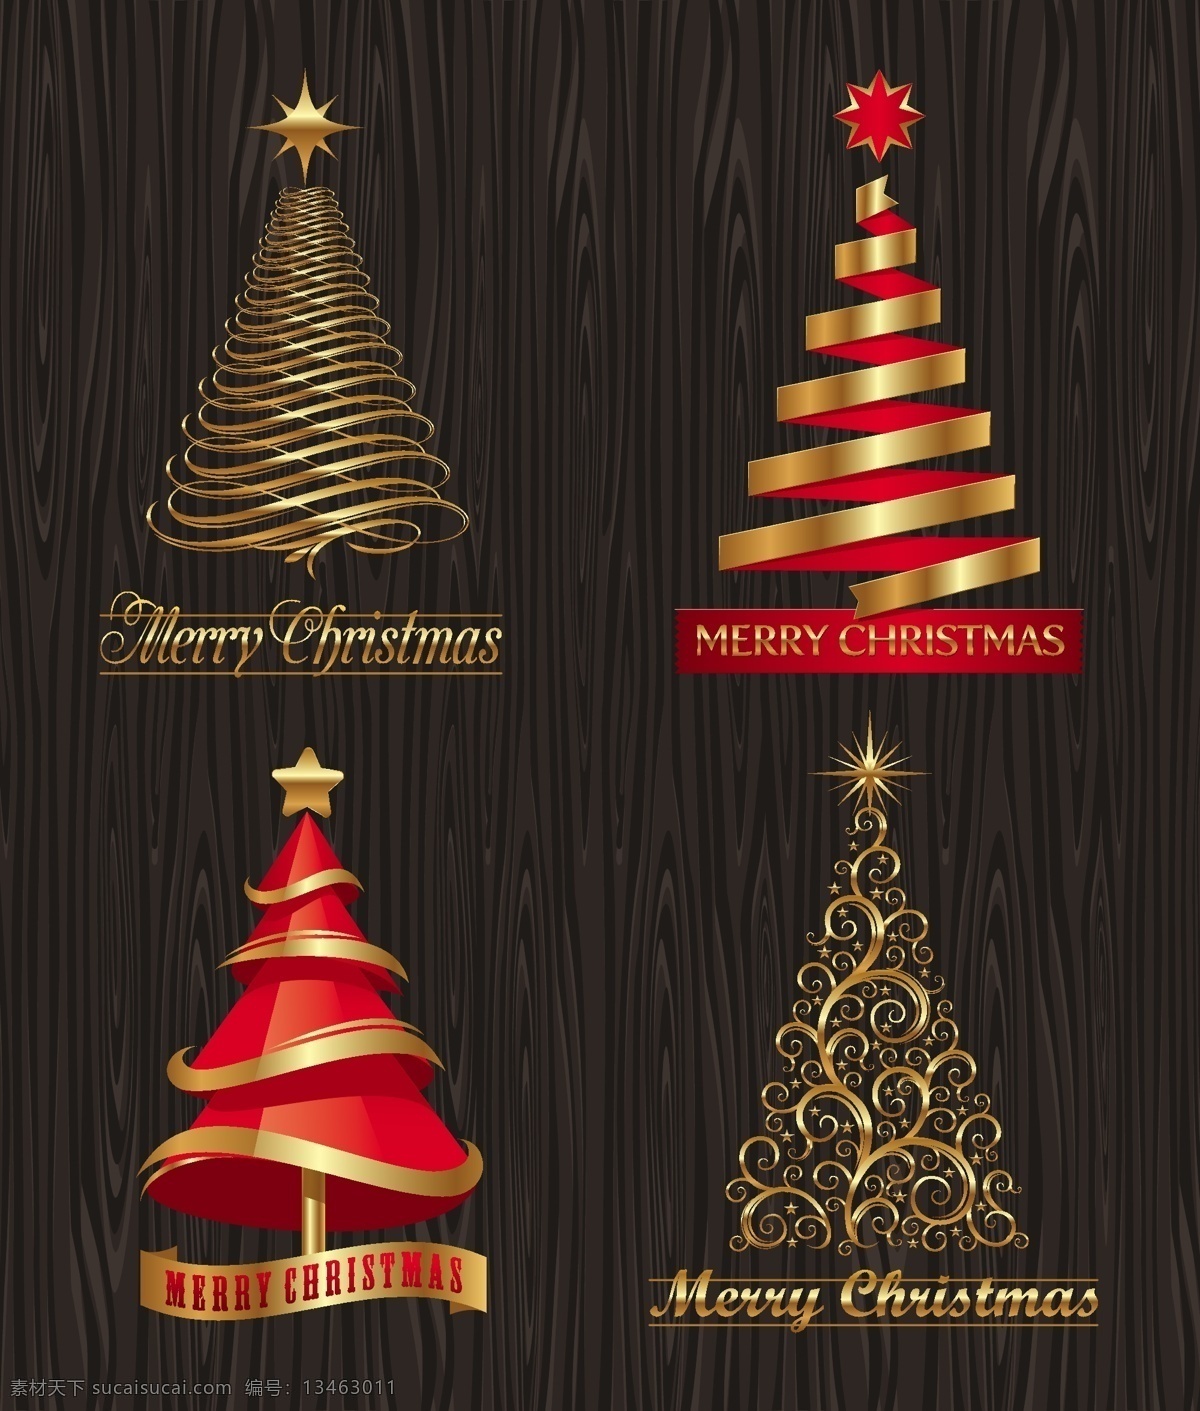 矢量 创意 折纸 圣诞树 背景 矢量素材 星星 雪花 纸条 字母 节日素材 其他节日